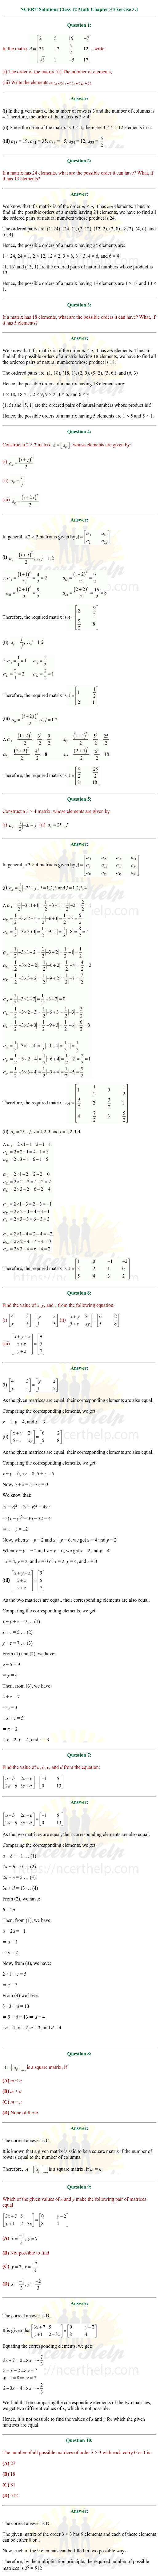 ex.3.1 Class 12 Math Chapter 3 ncert solutions